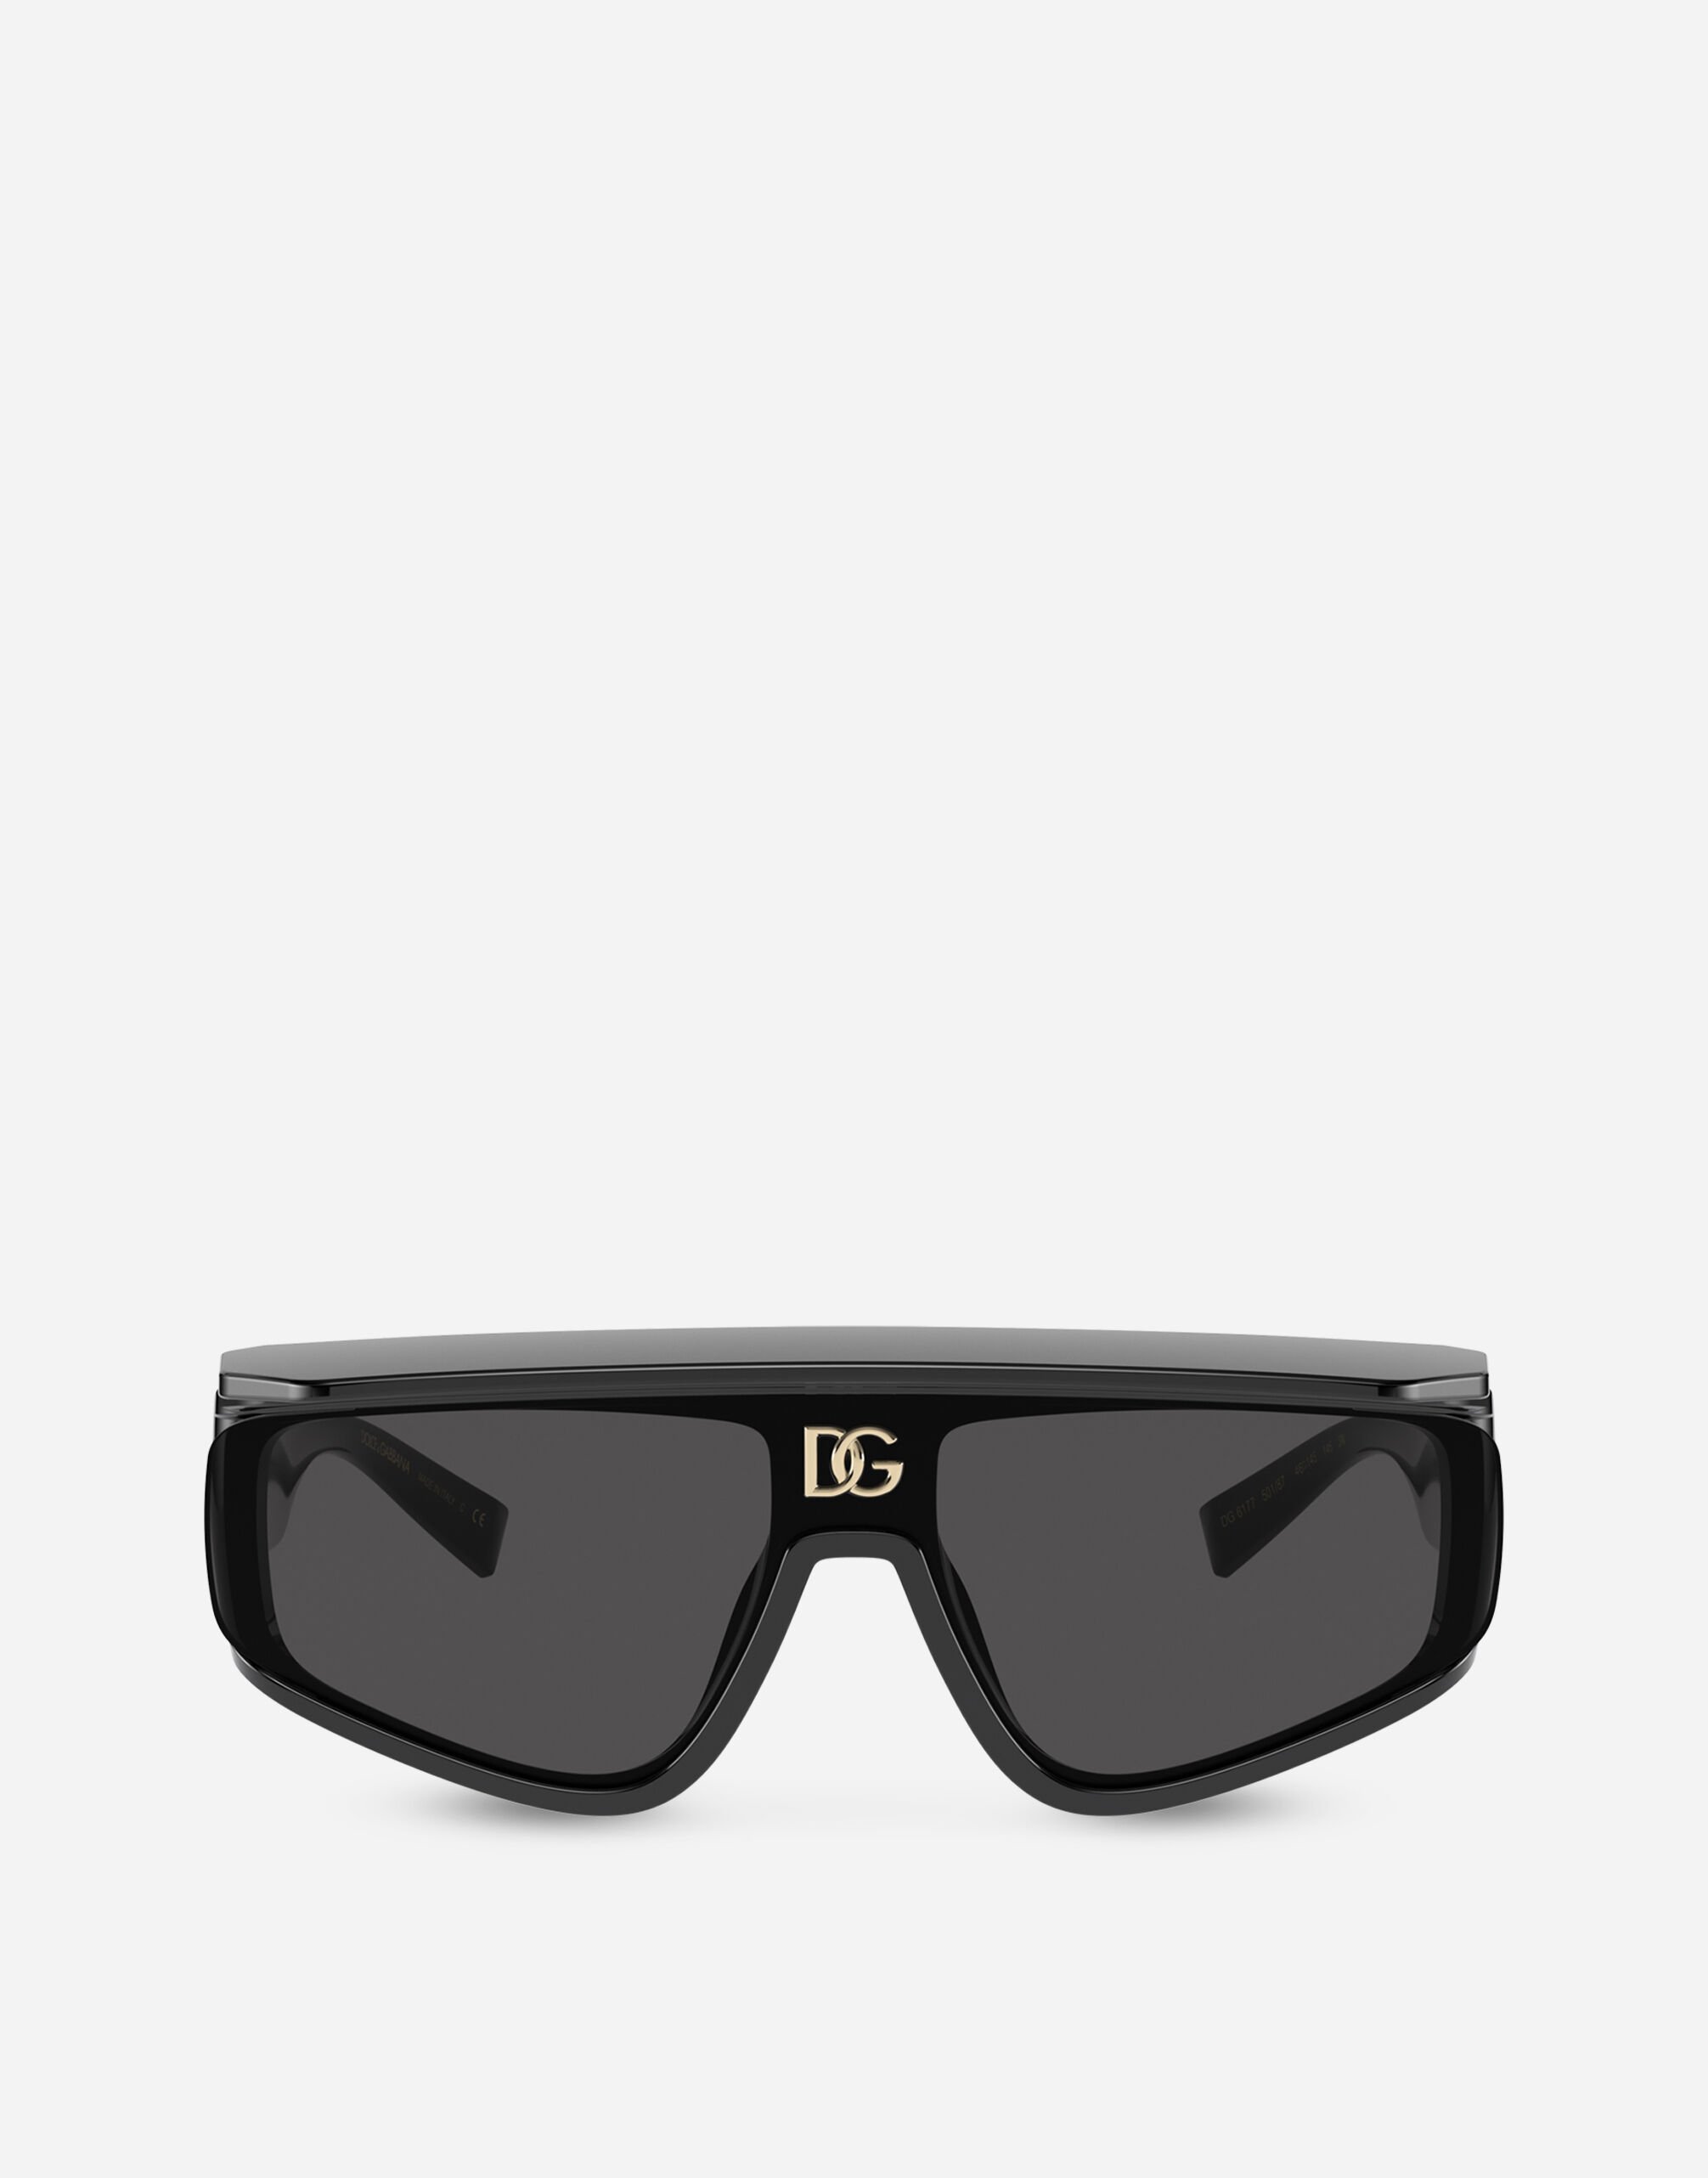 というスタイルですDolce \u0026 Gabbana sunglasses